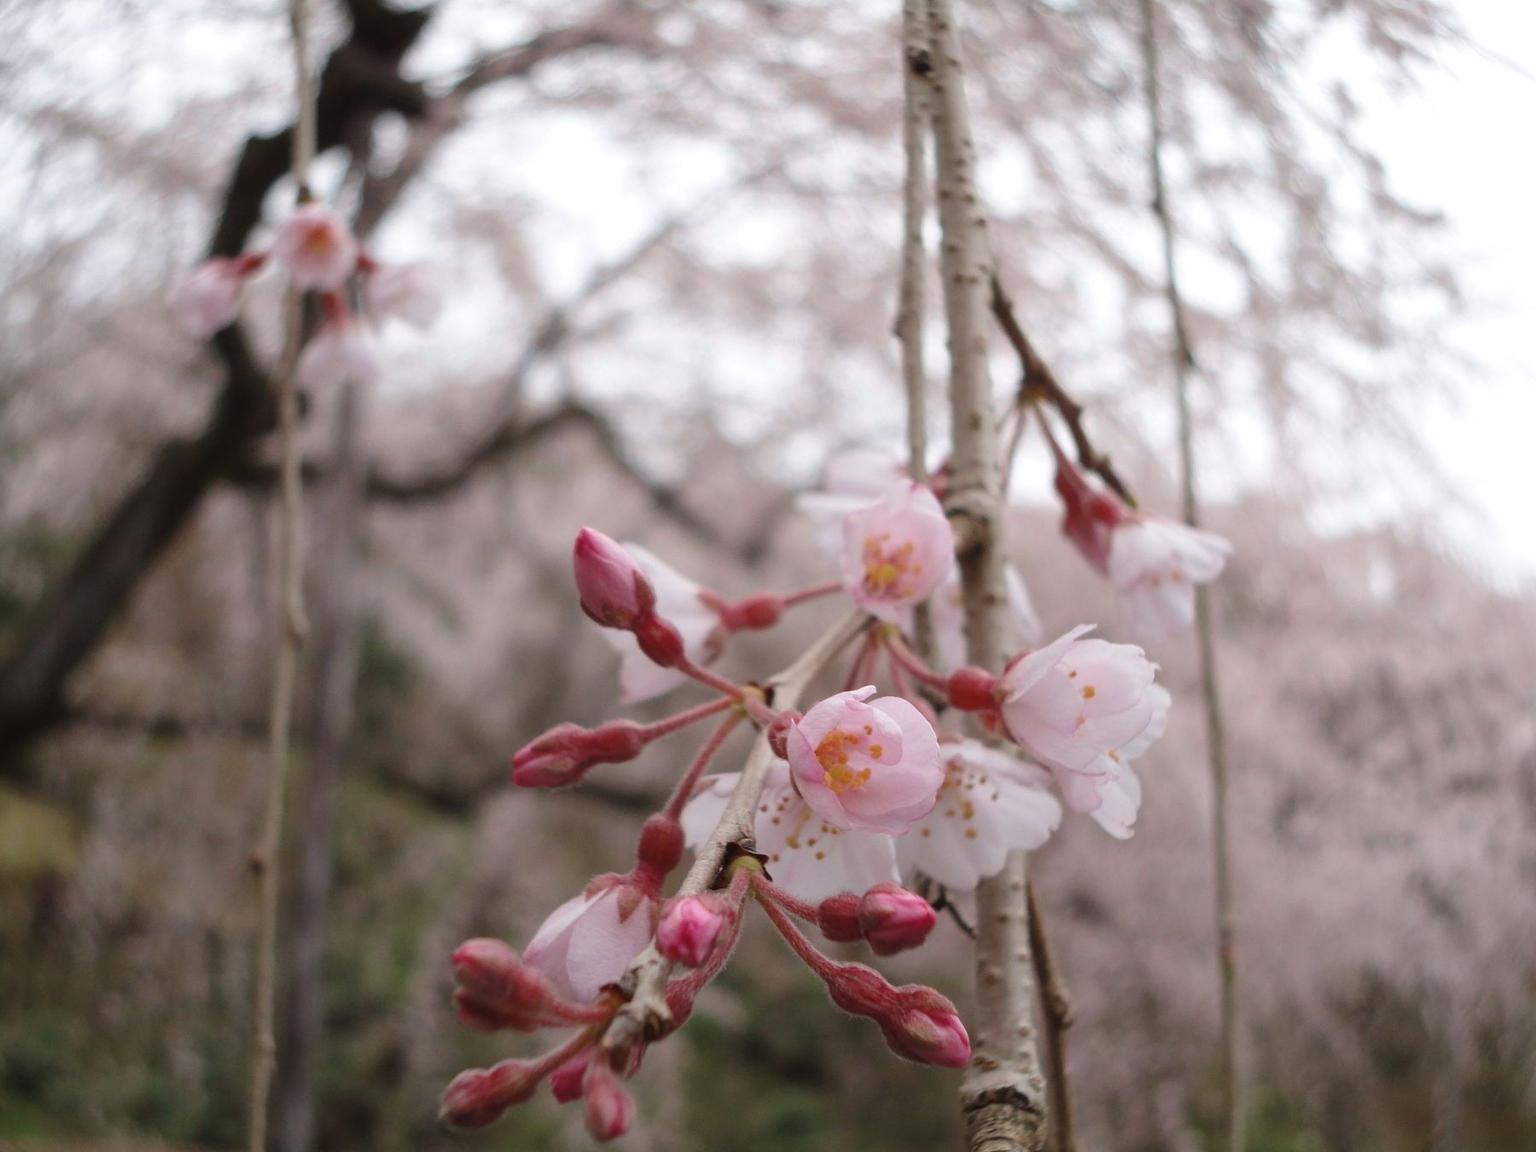 Cherry blossoms (sakura) in Sagano